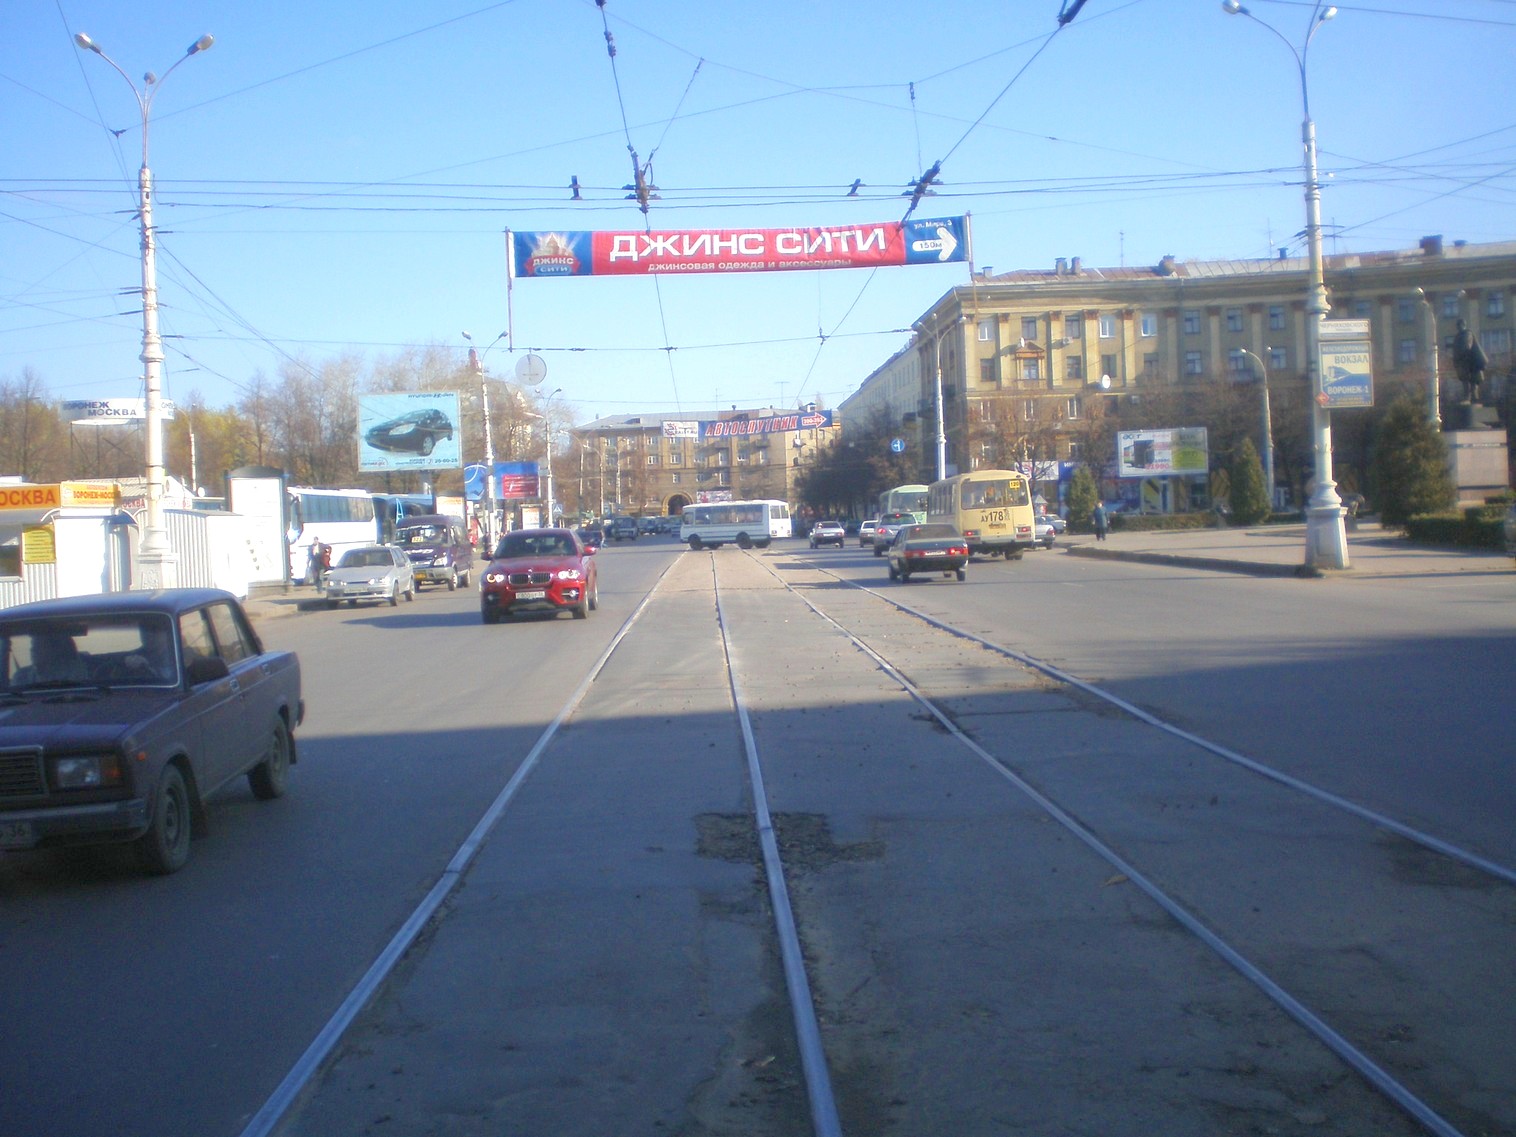 Воронежский трамвай  —  фотографии, сделанные в 2008 году (часть 1)